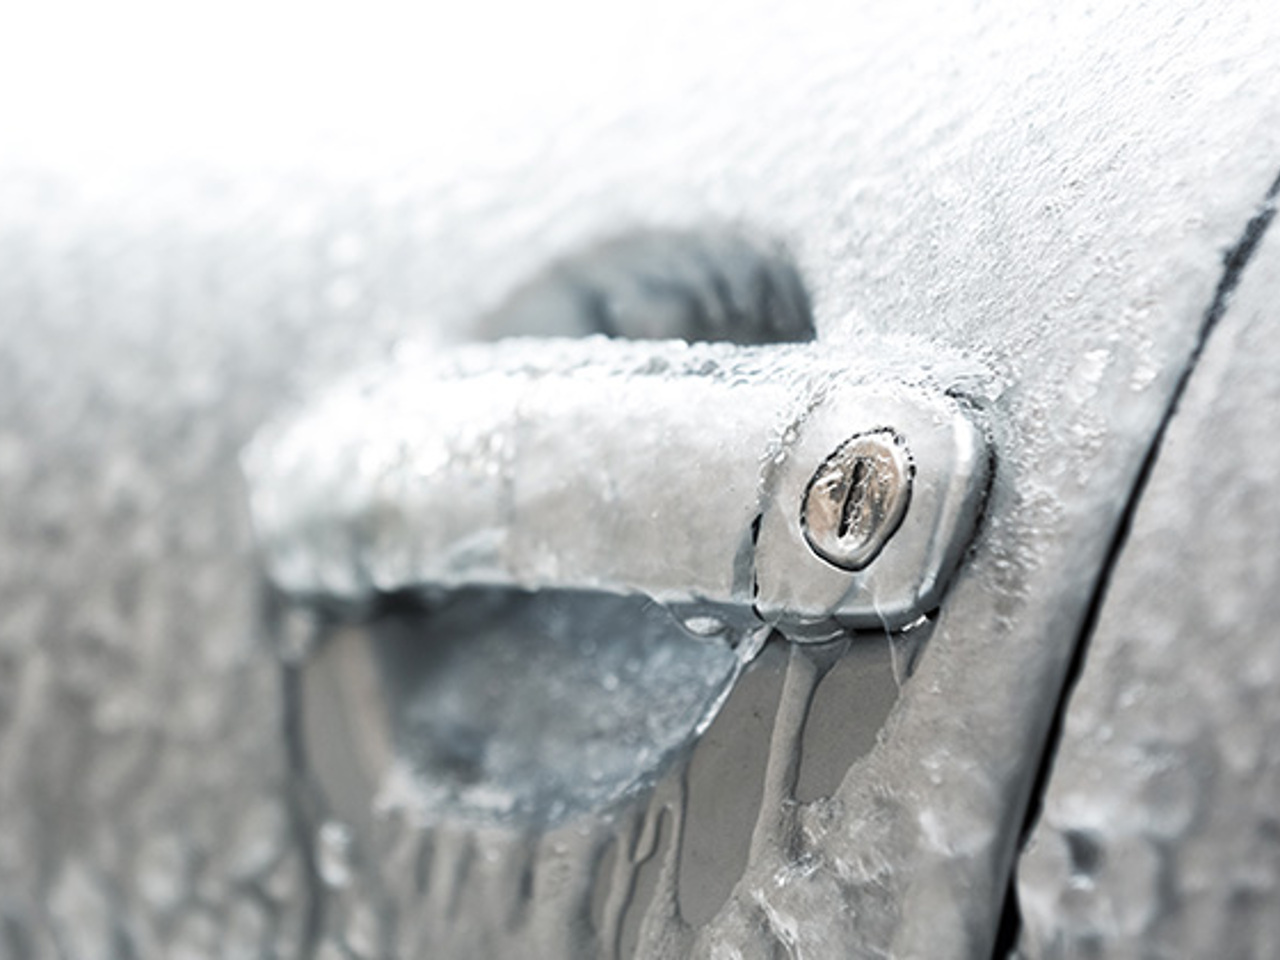 Замерзший замок автомобиля. Примерзшая дверь автомобиля. Замерз замок авто. Замерзли двери в машине.